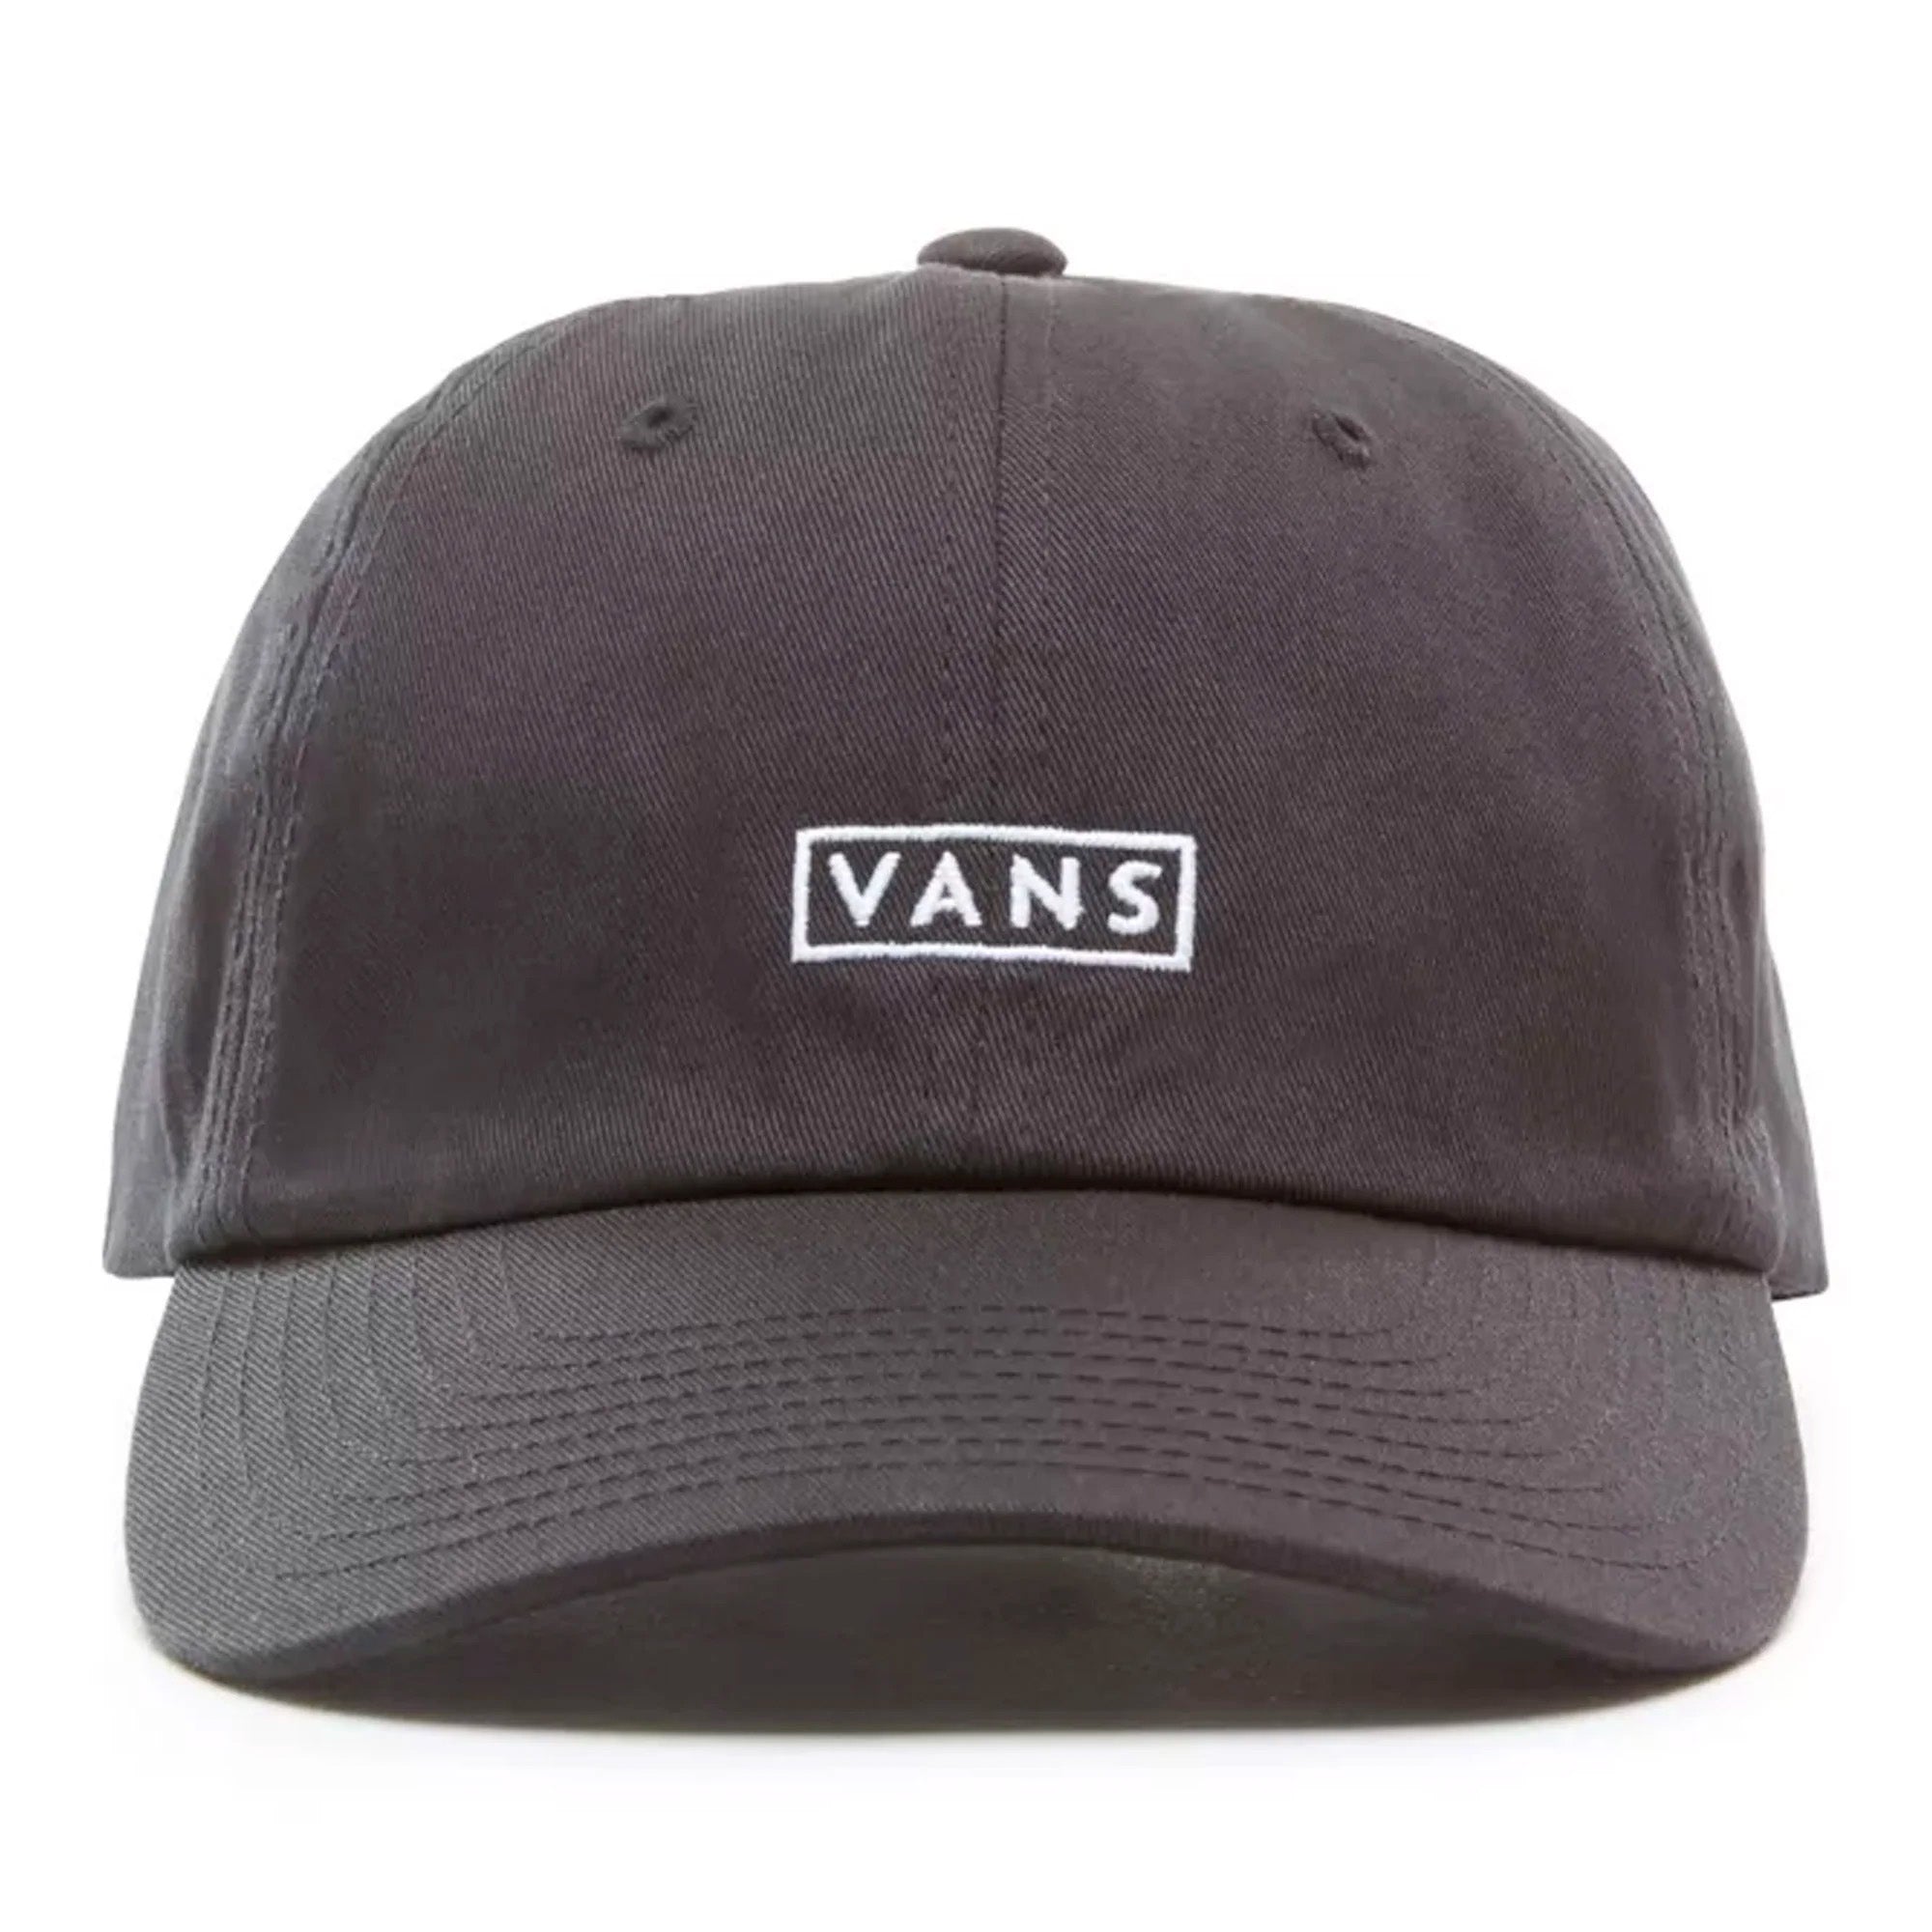 Vans Curved Bill Jockey Men's Hat